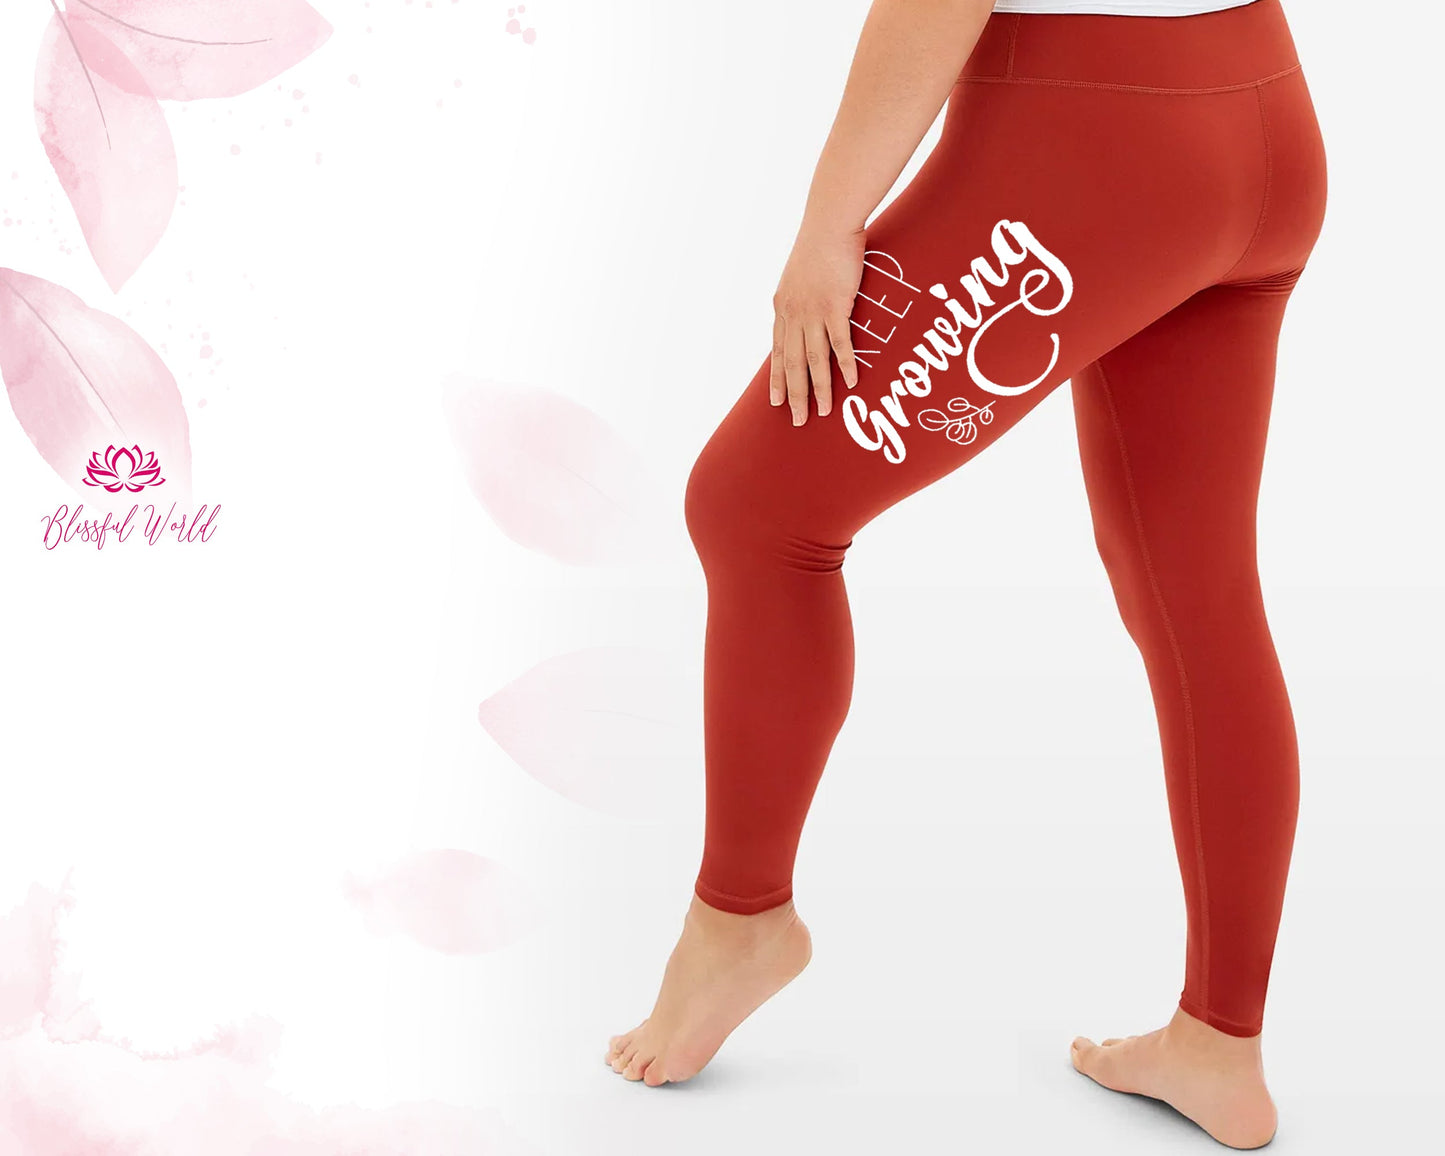 Size medium red workout leggings #workoutleggings - Depop